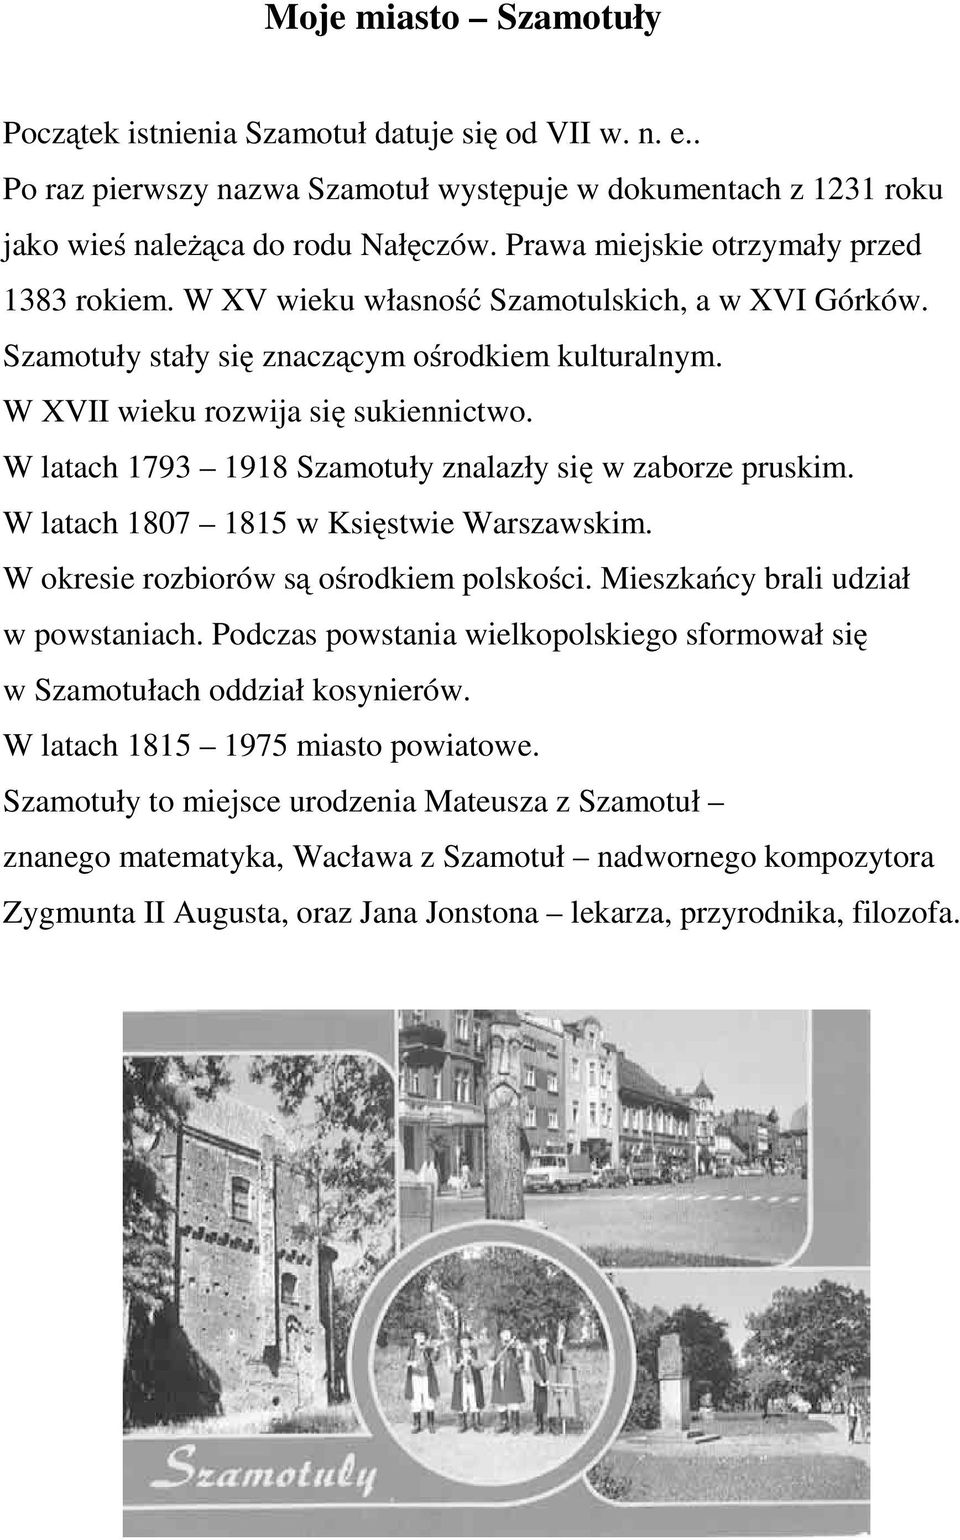 W latach 1793 1918 Szamotuły znalazły się w zaborze pruskim. W latach 1807 1815 w Księstwie Warszawskim. W okresie rozbiorów są ośrodkiem polskości. Mieszkańcy brali udział w powstaniach.